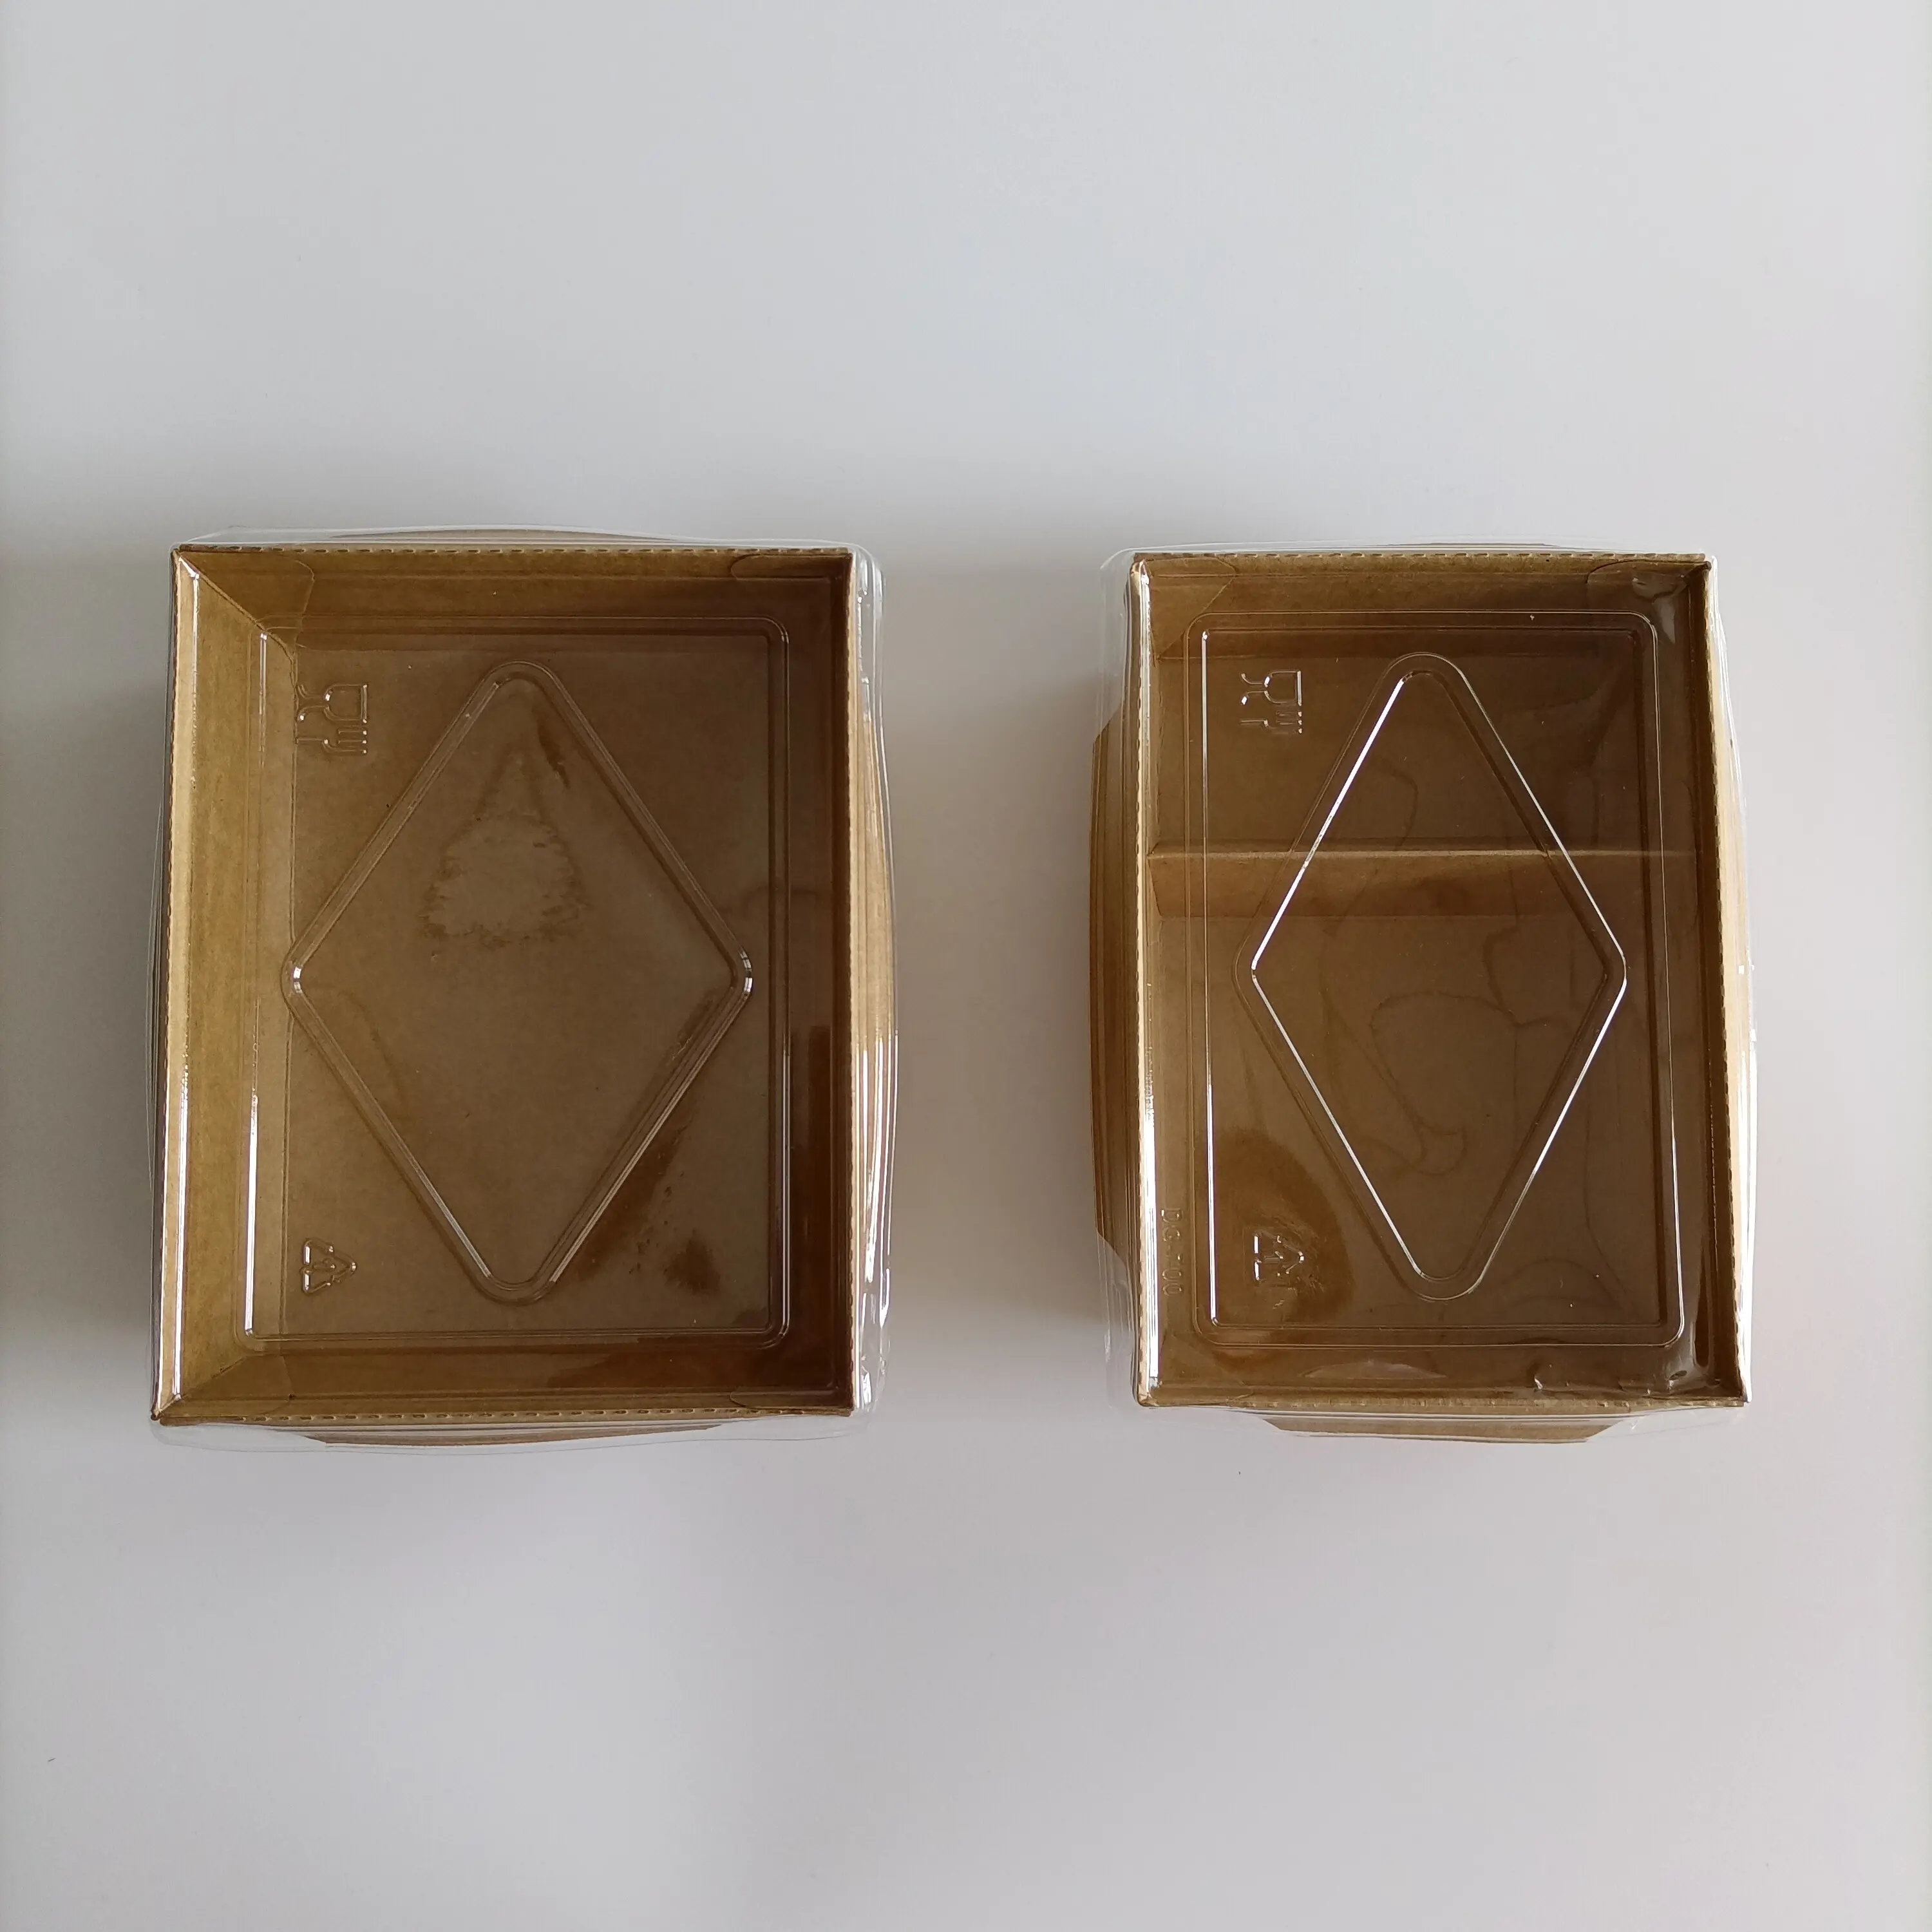 Одноразовая коробка из крафт-бумаги с окошком, одноразовая коробка для ланча из крафт-бумаги, упаковка для пищевых продуктов, коробка из крафт-бумаги